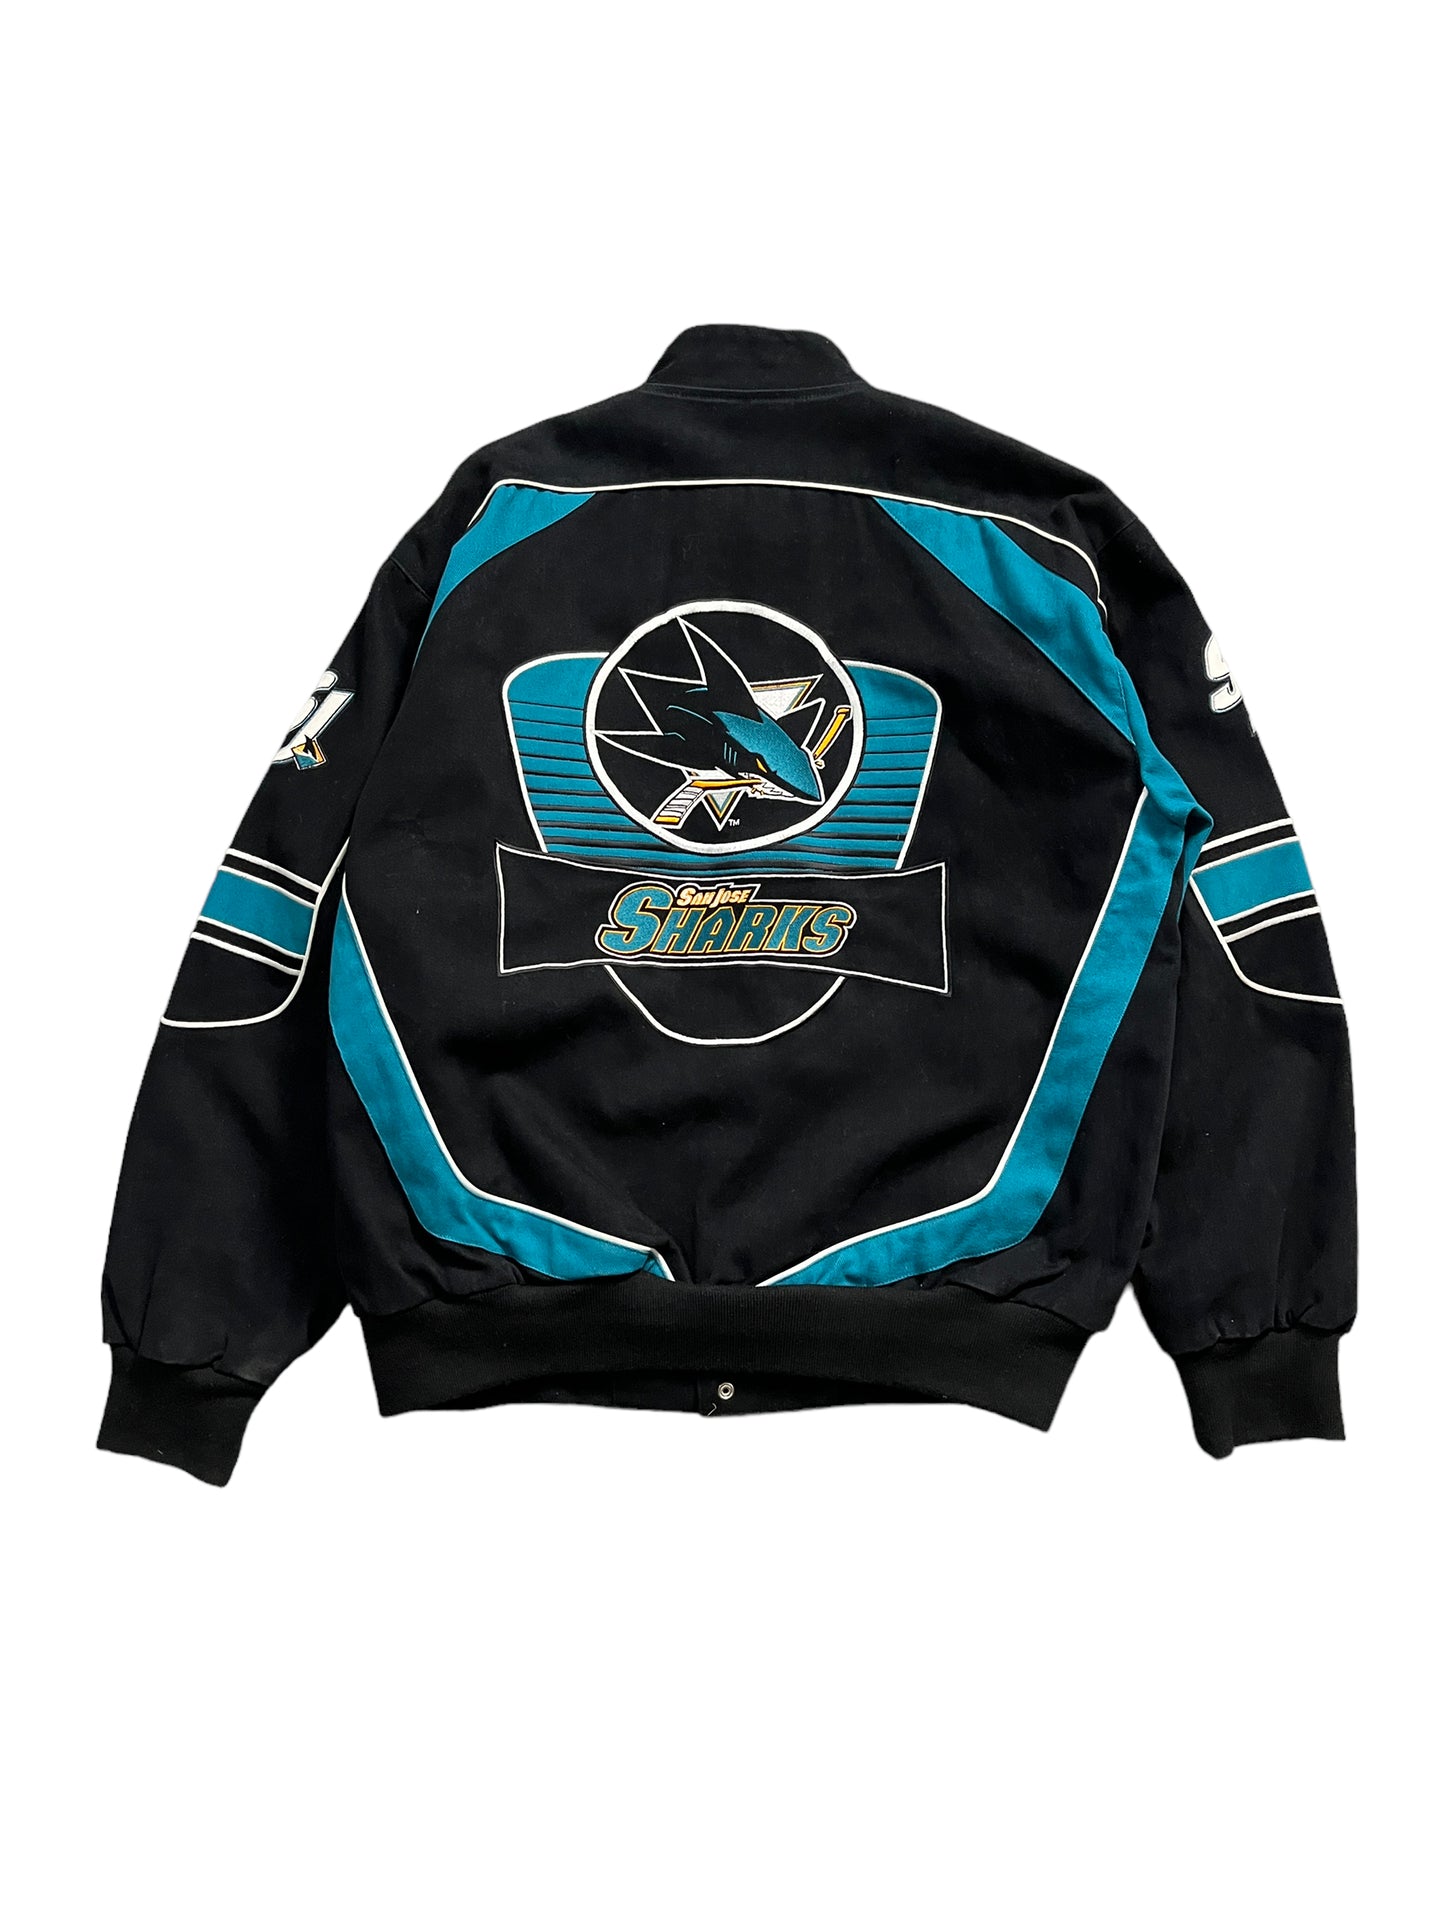 Rare Vintage San Jose Sharks G-III Jacket